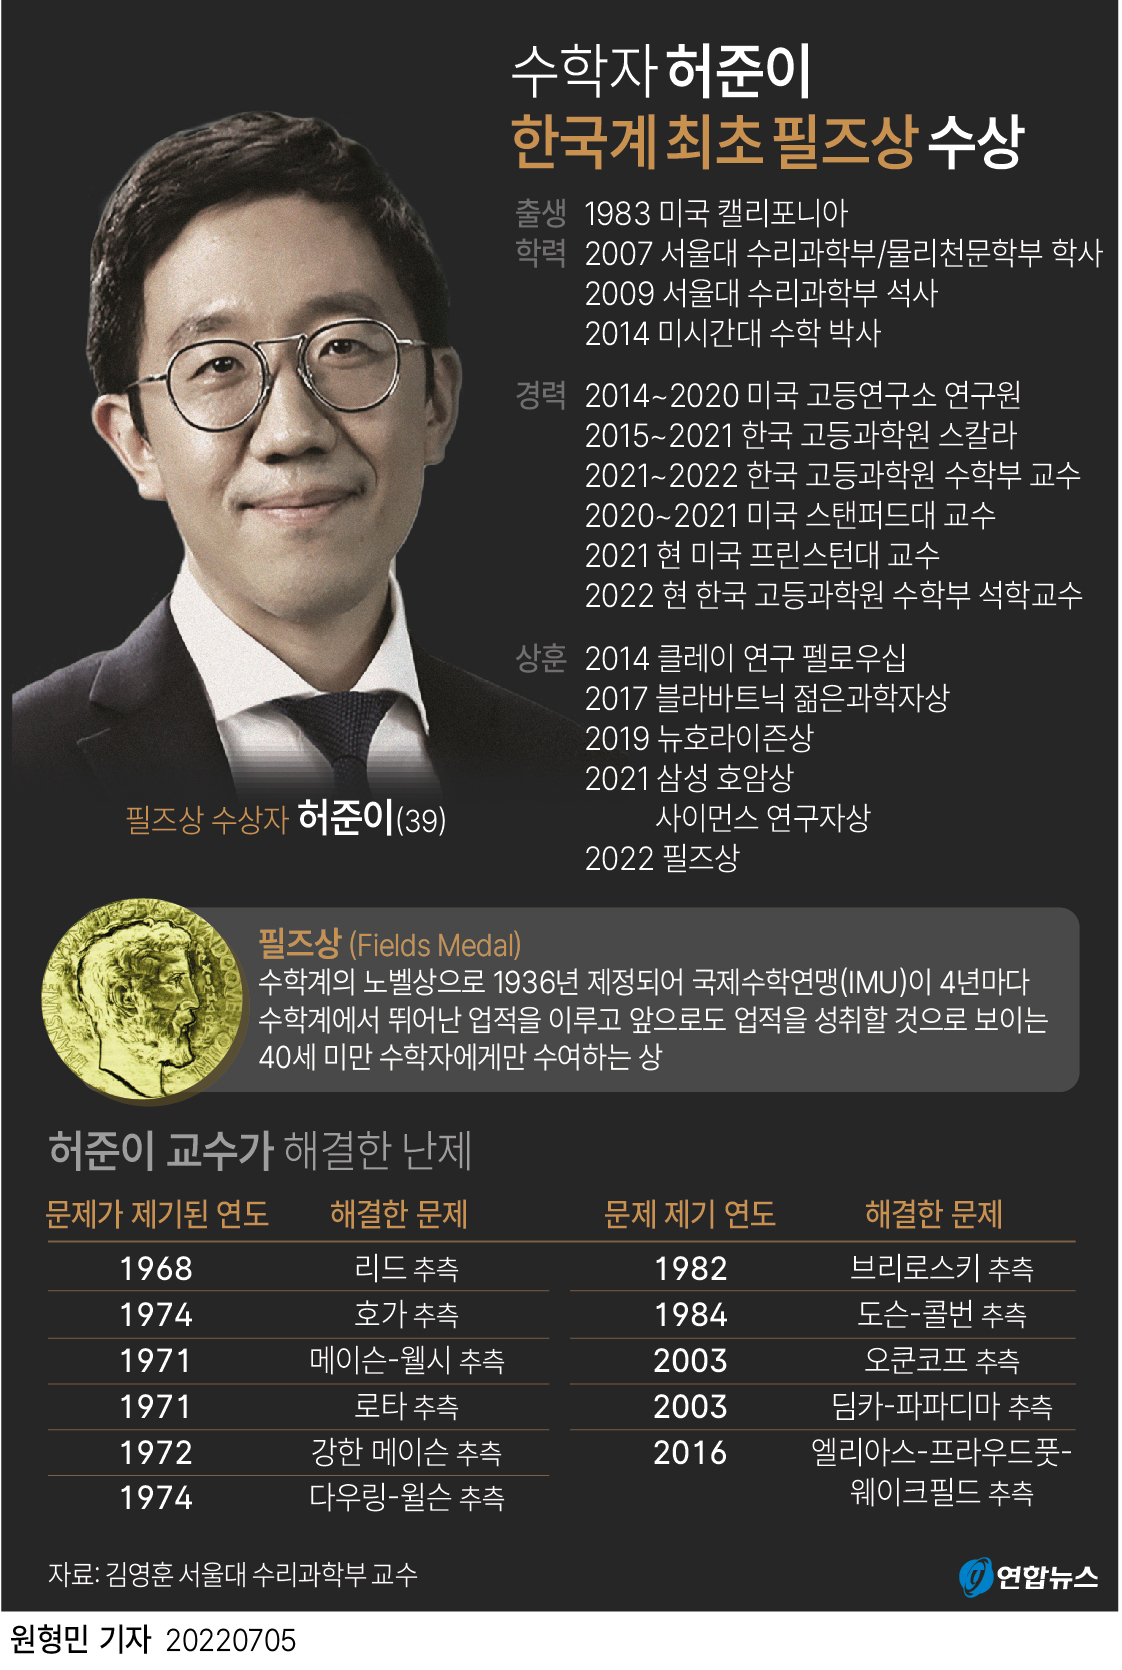 [그래픽] 수학자 허준이 한국계 최초 필즈상 수상